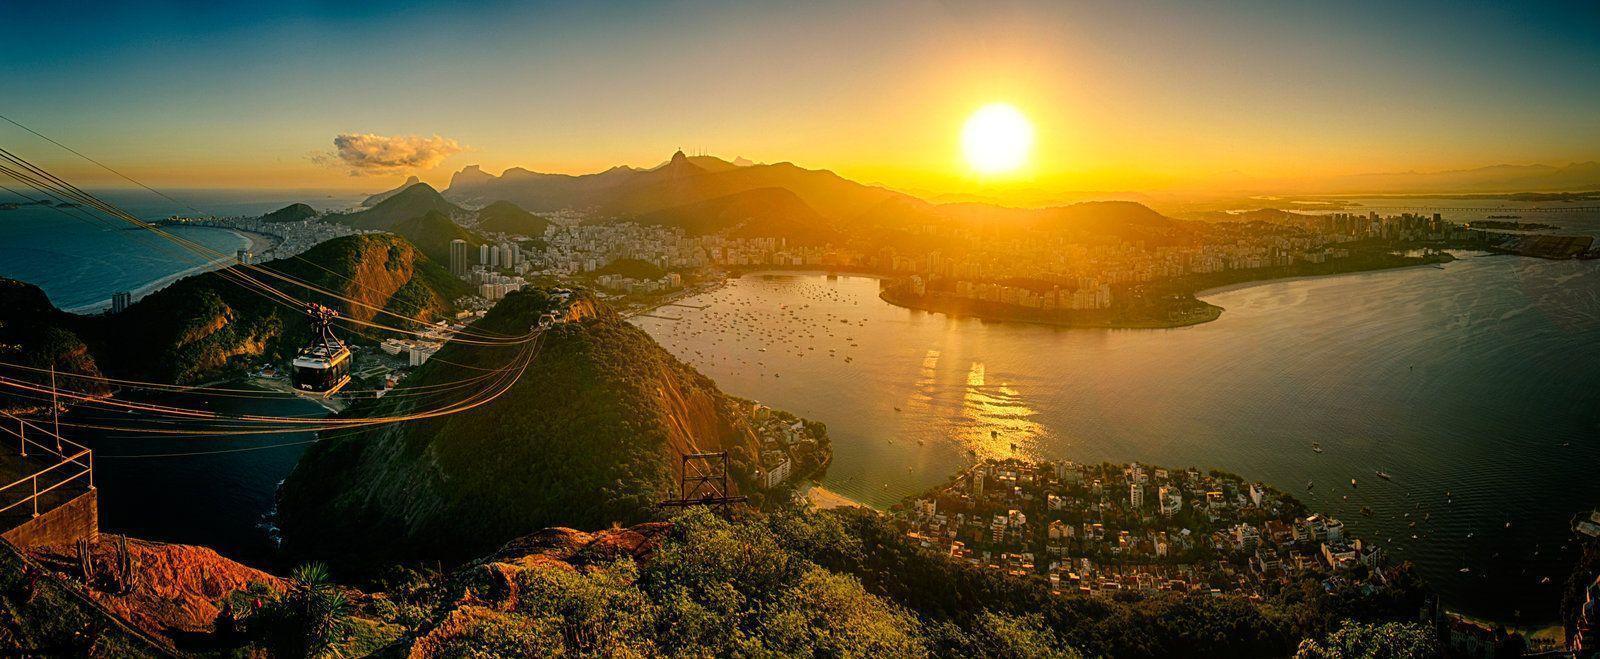 Enjoy Rio de Janeiro as Traveler